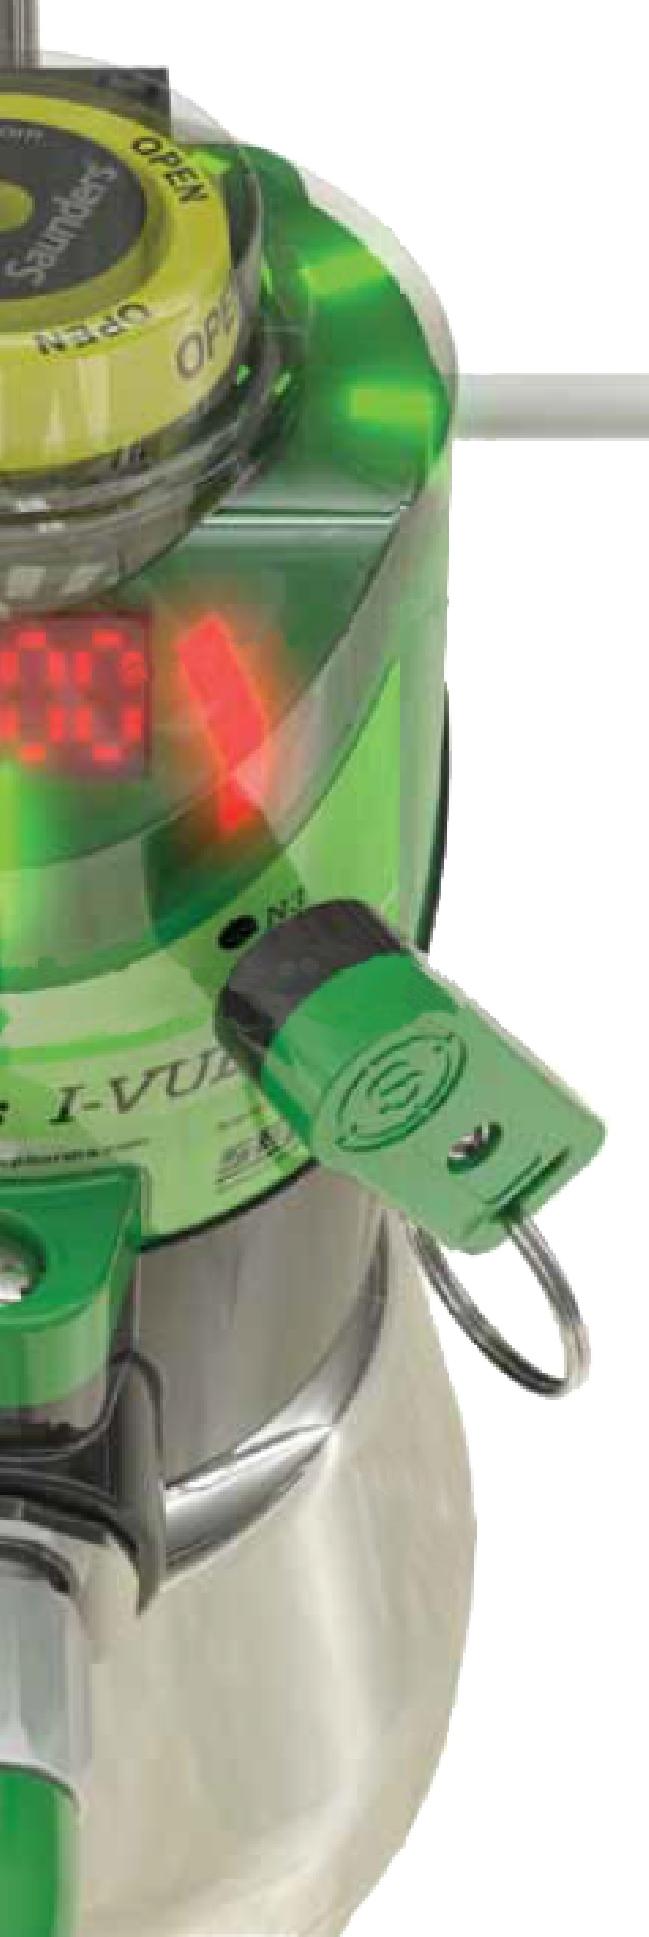 Leds de Sinalização Local Além do indicador mecânico, leds de alta visibilidade são usados para indicar localmente a posição da válvula, onde acendem verde para posição aberta e vermelho para posição